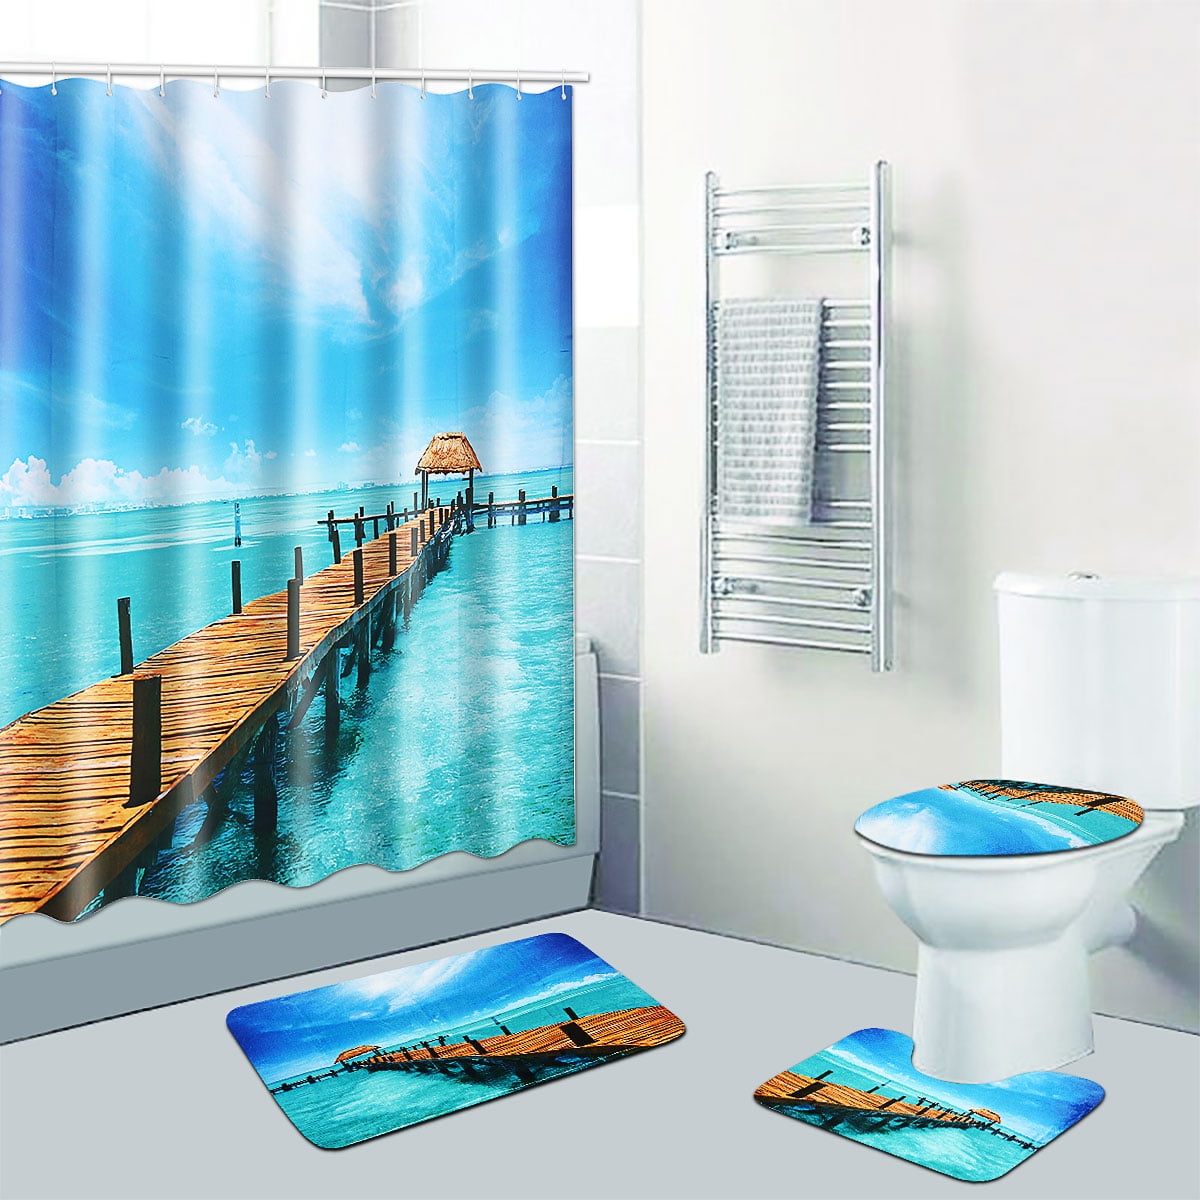 Seaside Scenery Shower Curtain Set Bathroom Rug Non-Slip Mat Toilet Lid Cover 